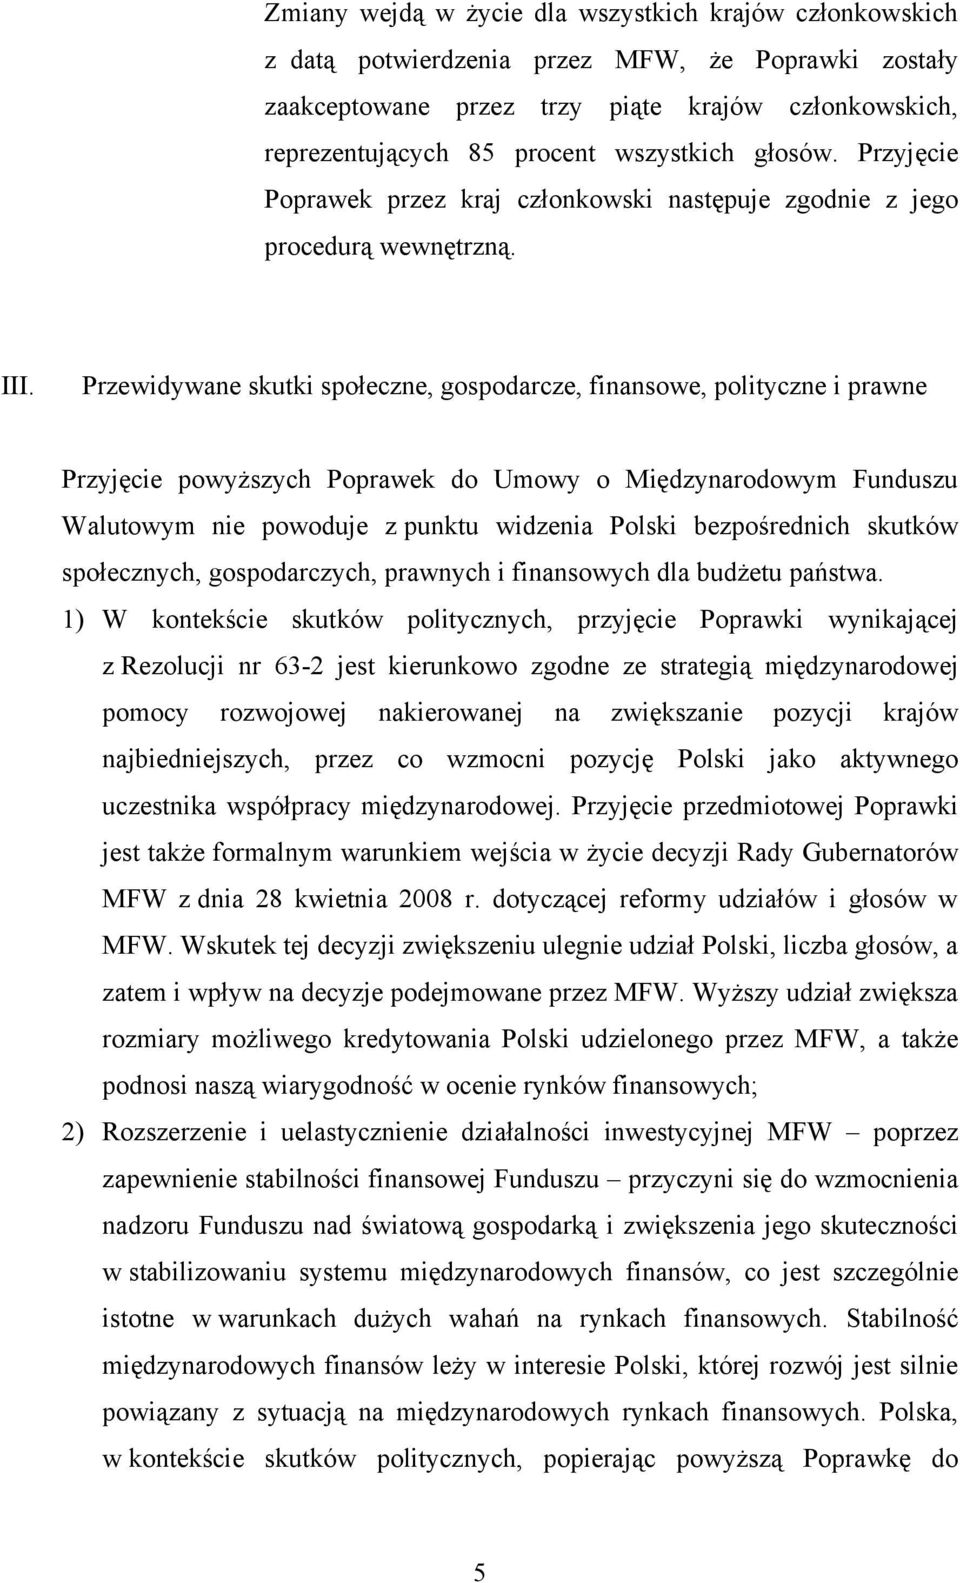 Przewidywane skutki społeczne, gospodarcze, finansowe, polityczne i prawne Przyjęcie powyższych Poprawek do Umowy o Międzynarodowym Funduszu Walutowym nie powoduje z punktu widzenia Polski